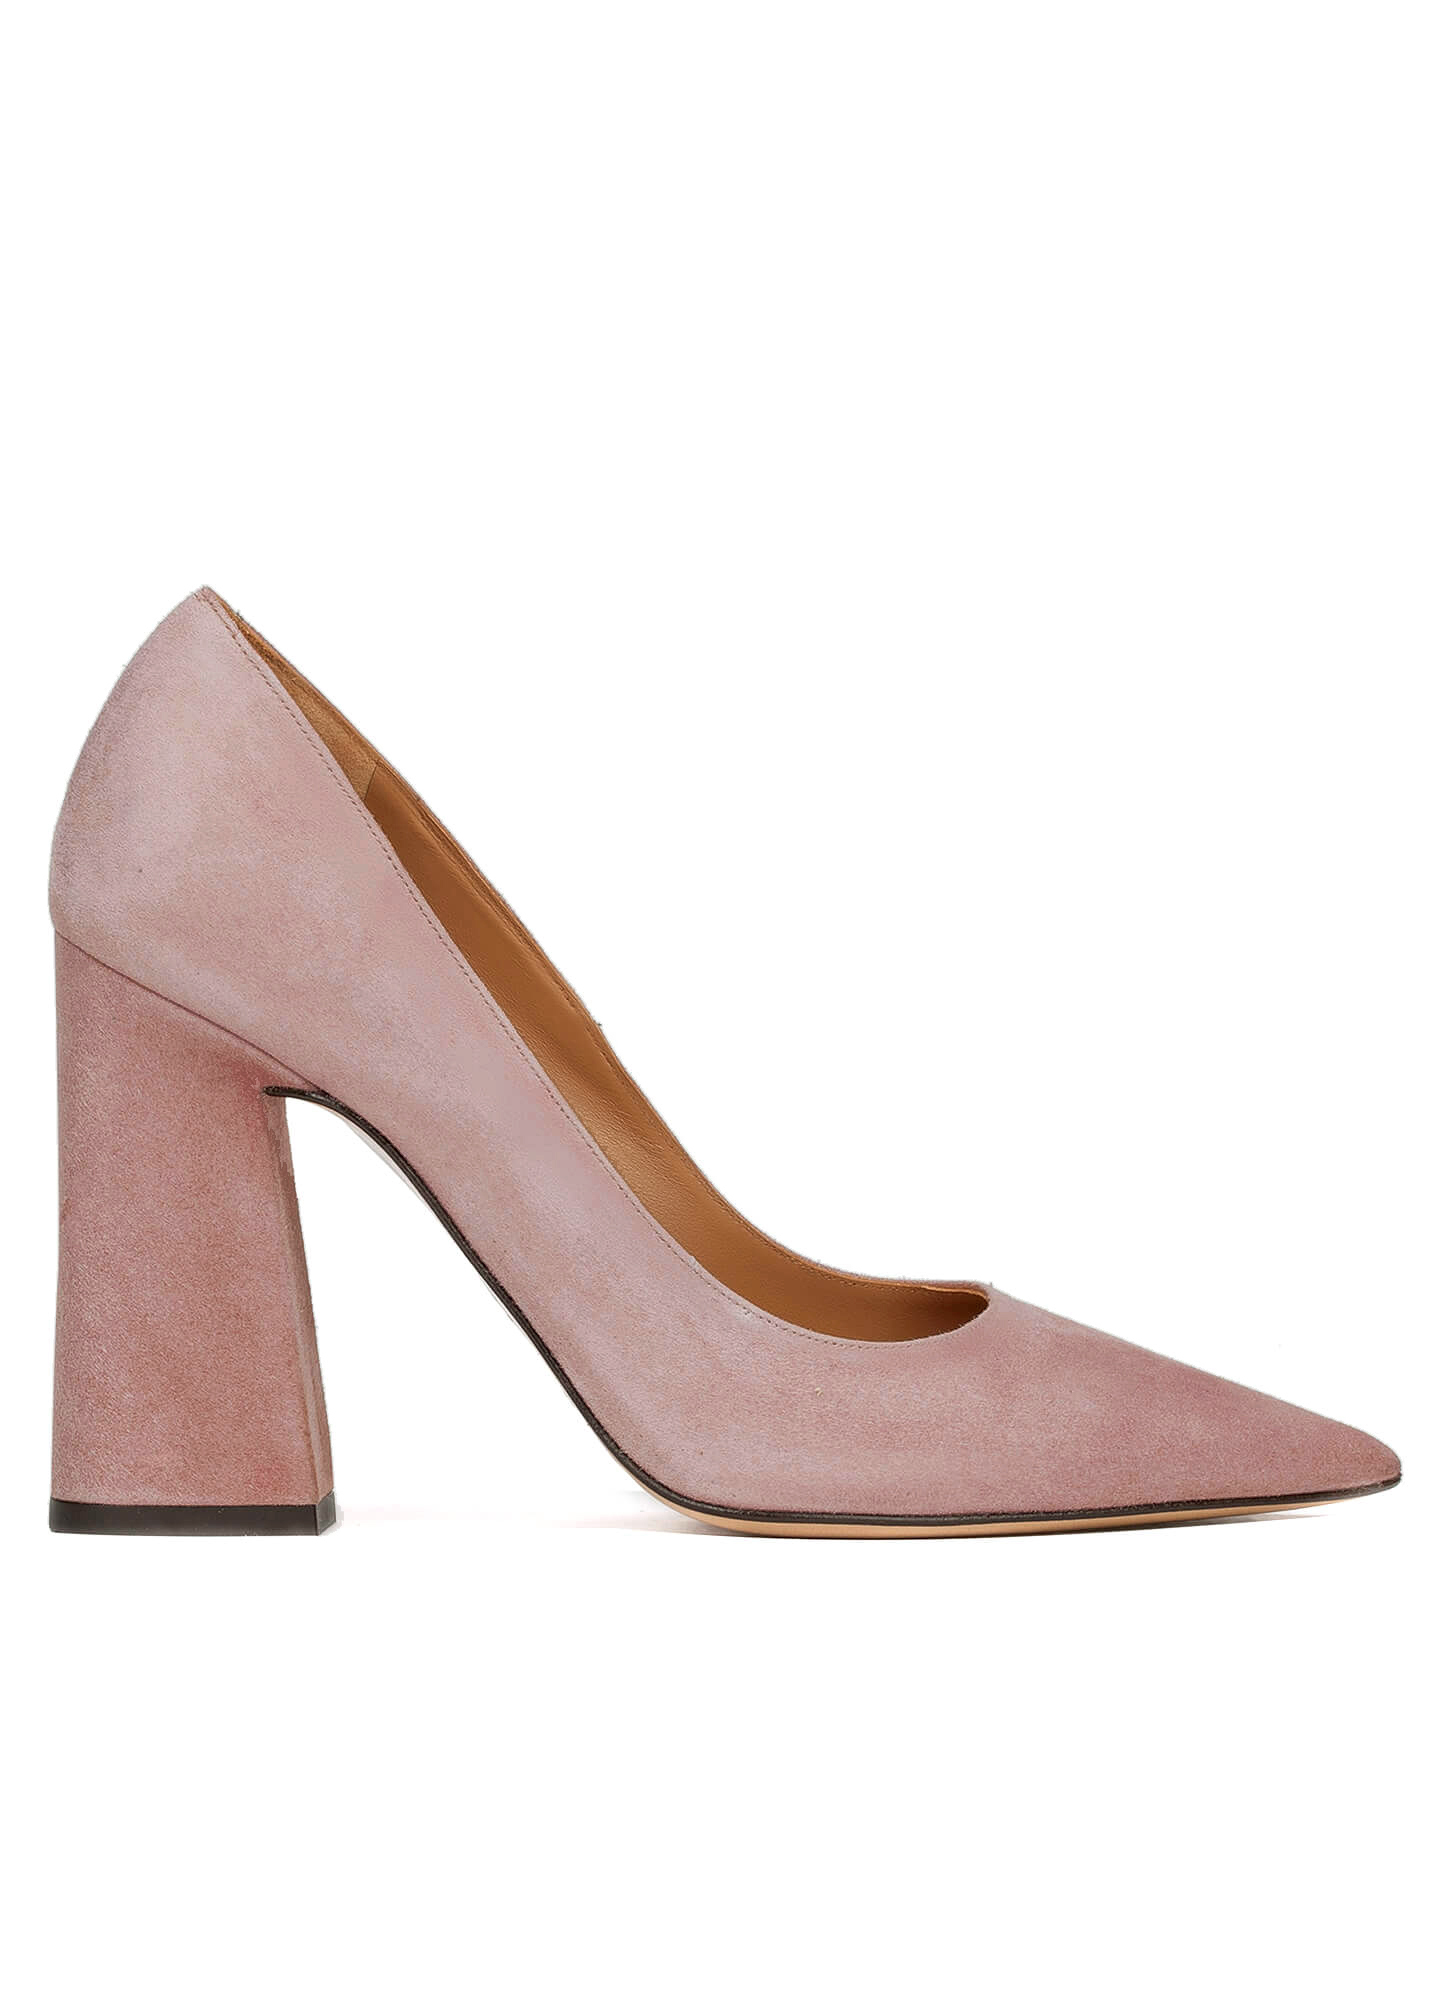 pink suede block heel shoes